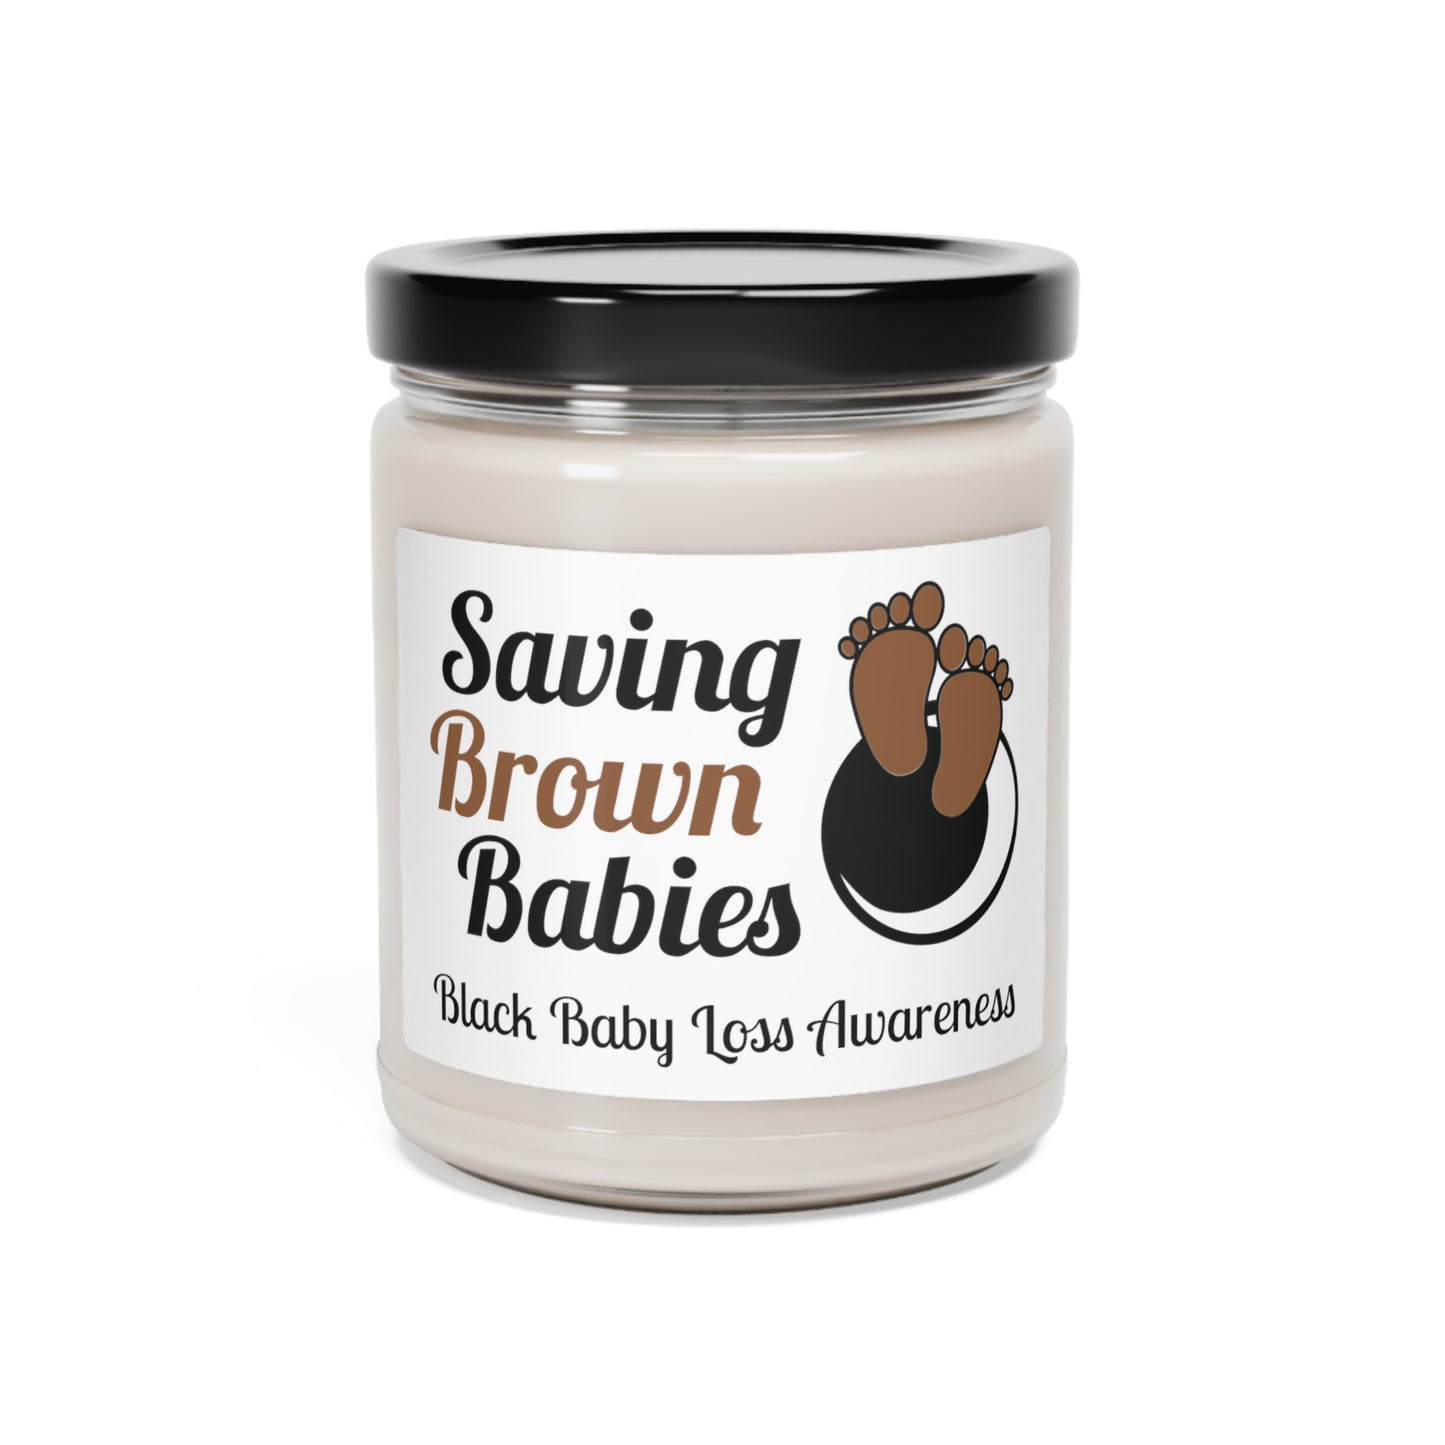 Quietly United in Loss Together and Saving Brown Babies Vela de soja de 9 oz para apoyar el embarazo y la concientización sobre la pérdida infantil